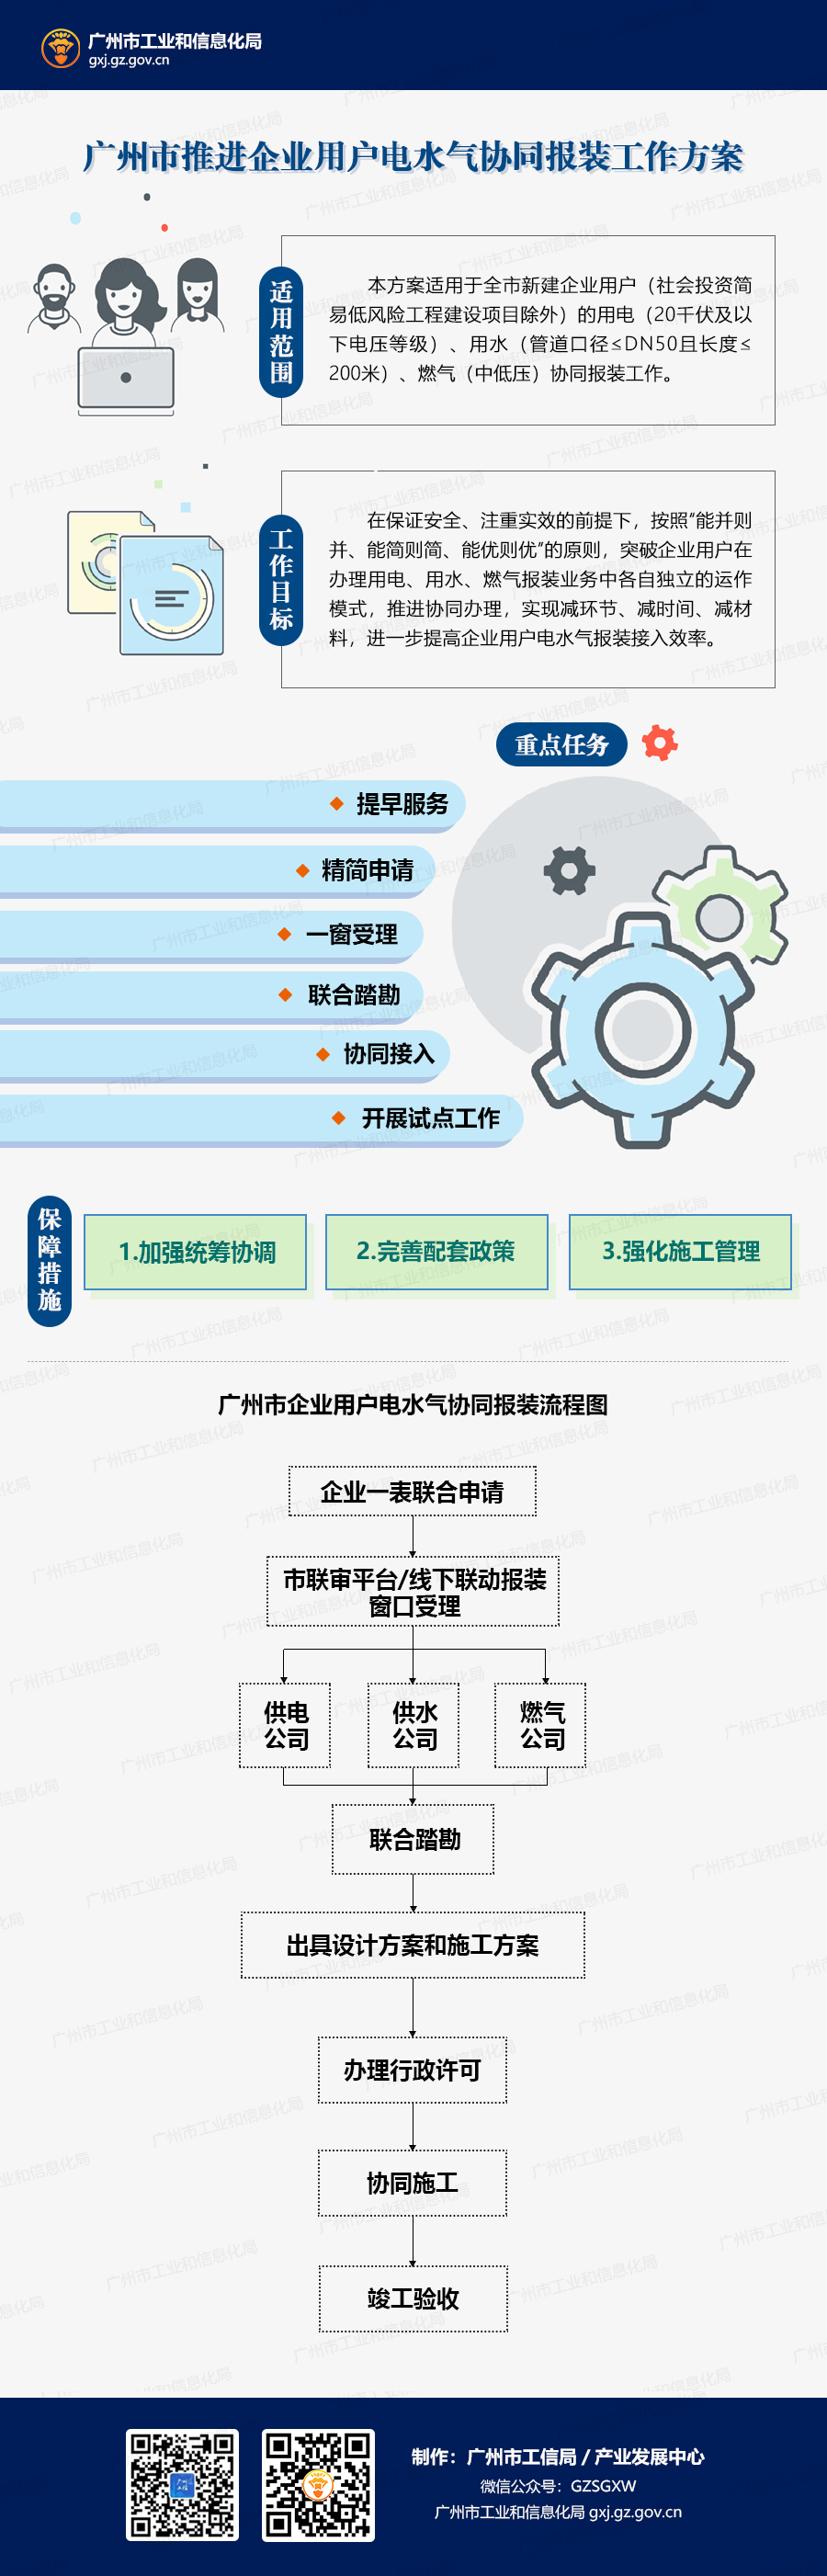 20210202广州市推进企业用户电水气协同报装工作方案.jpg